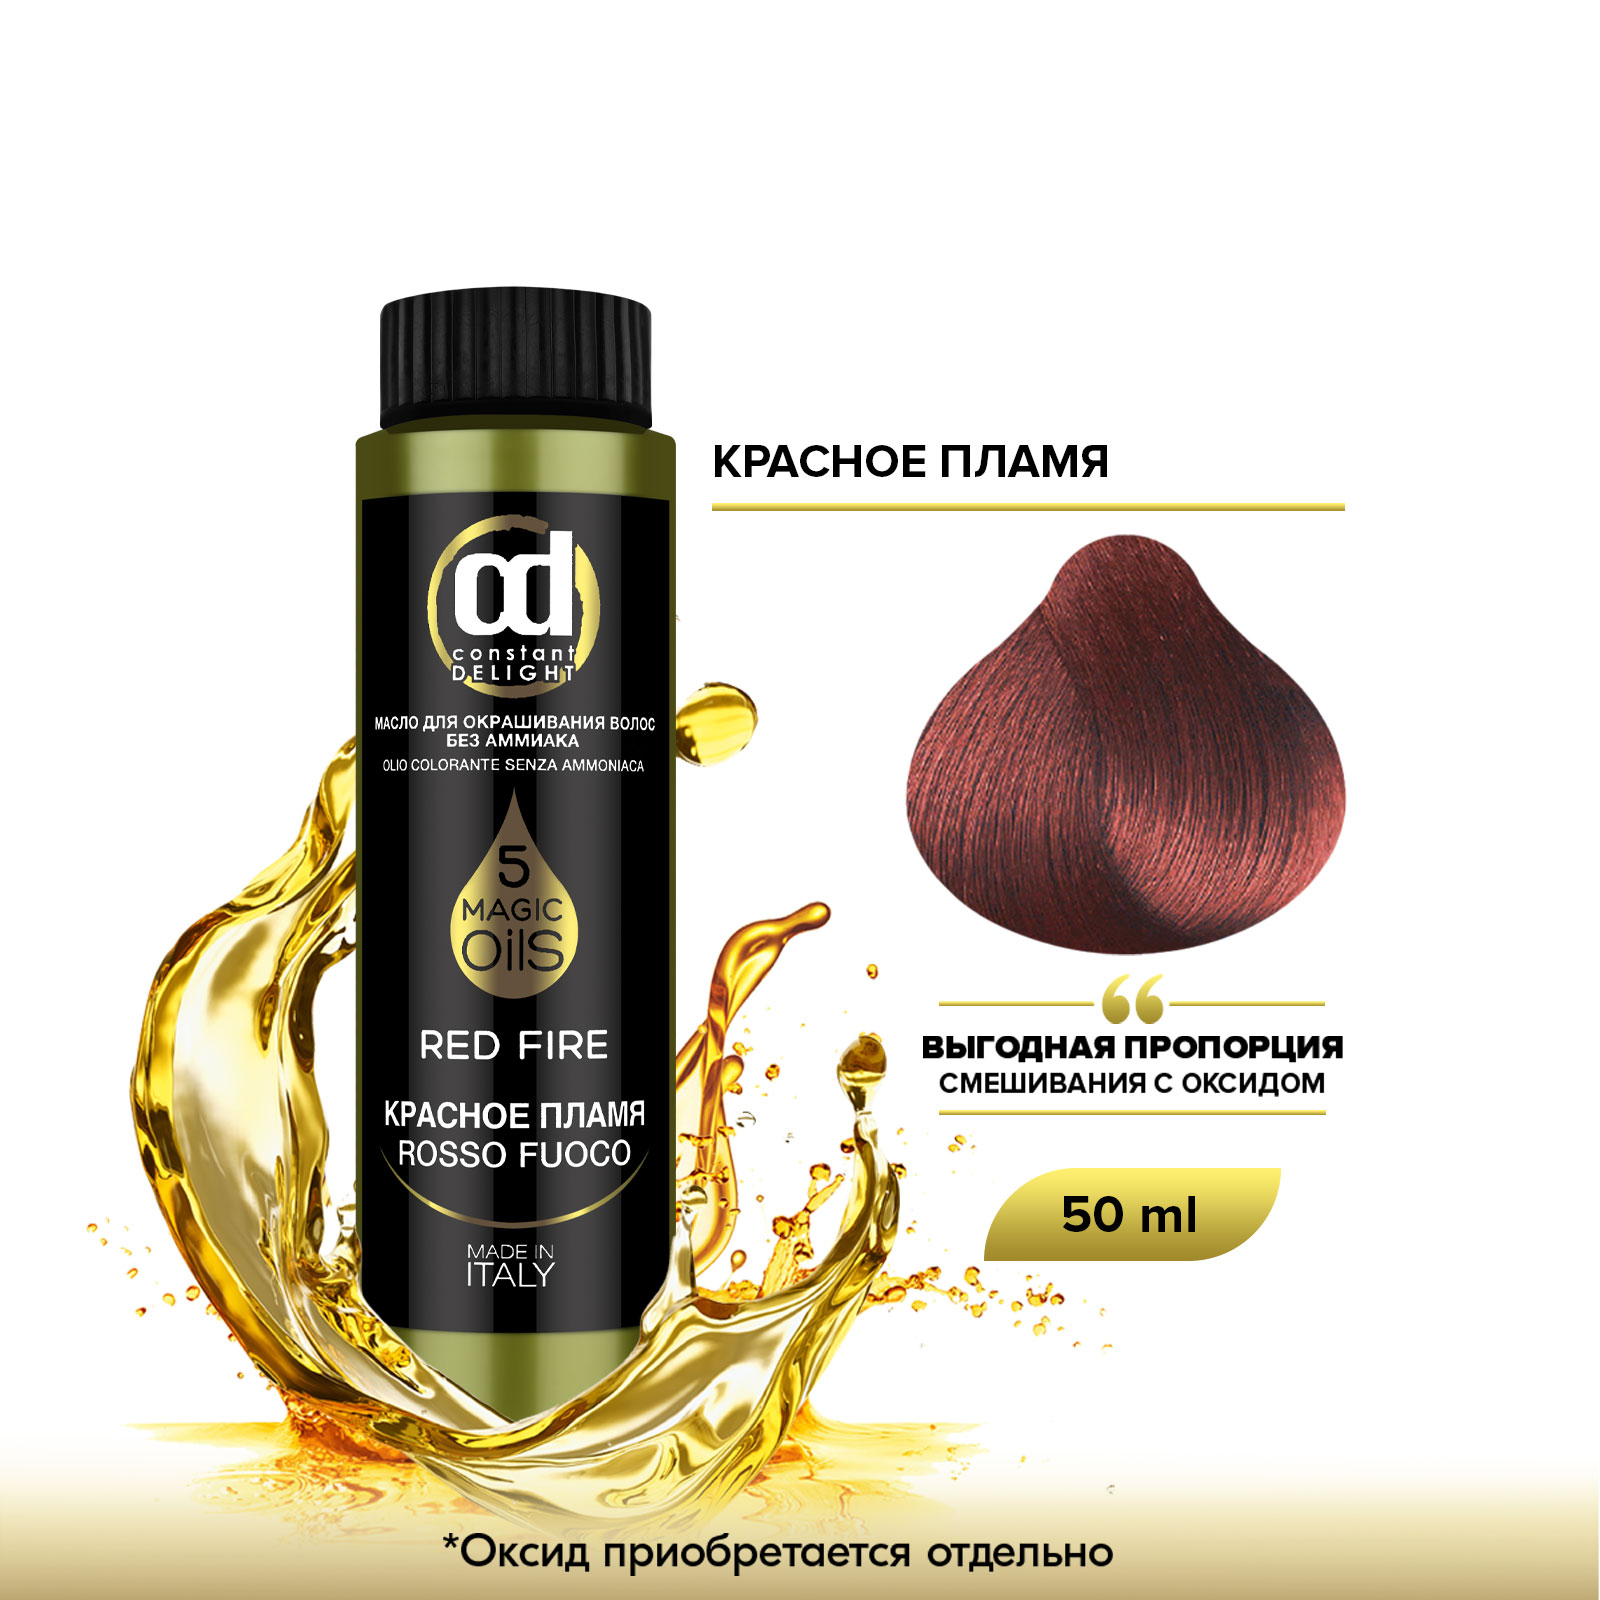 Масло Constant Delight Magic 5 Oils для окрашивания волос красное пламя 50 мл